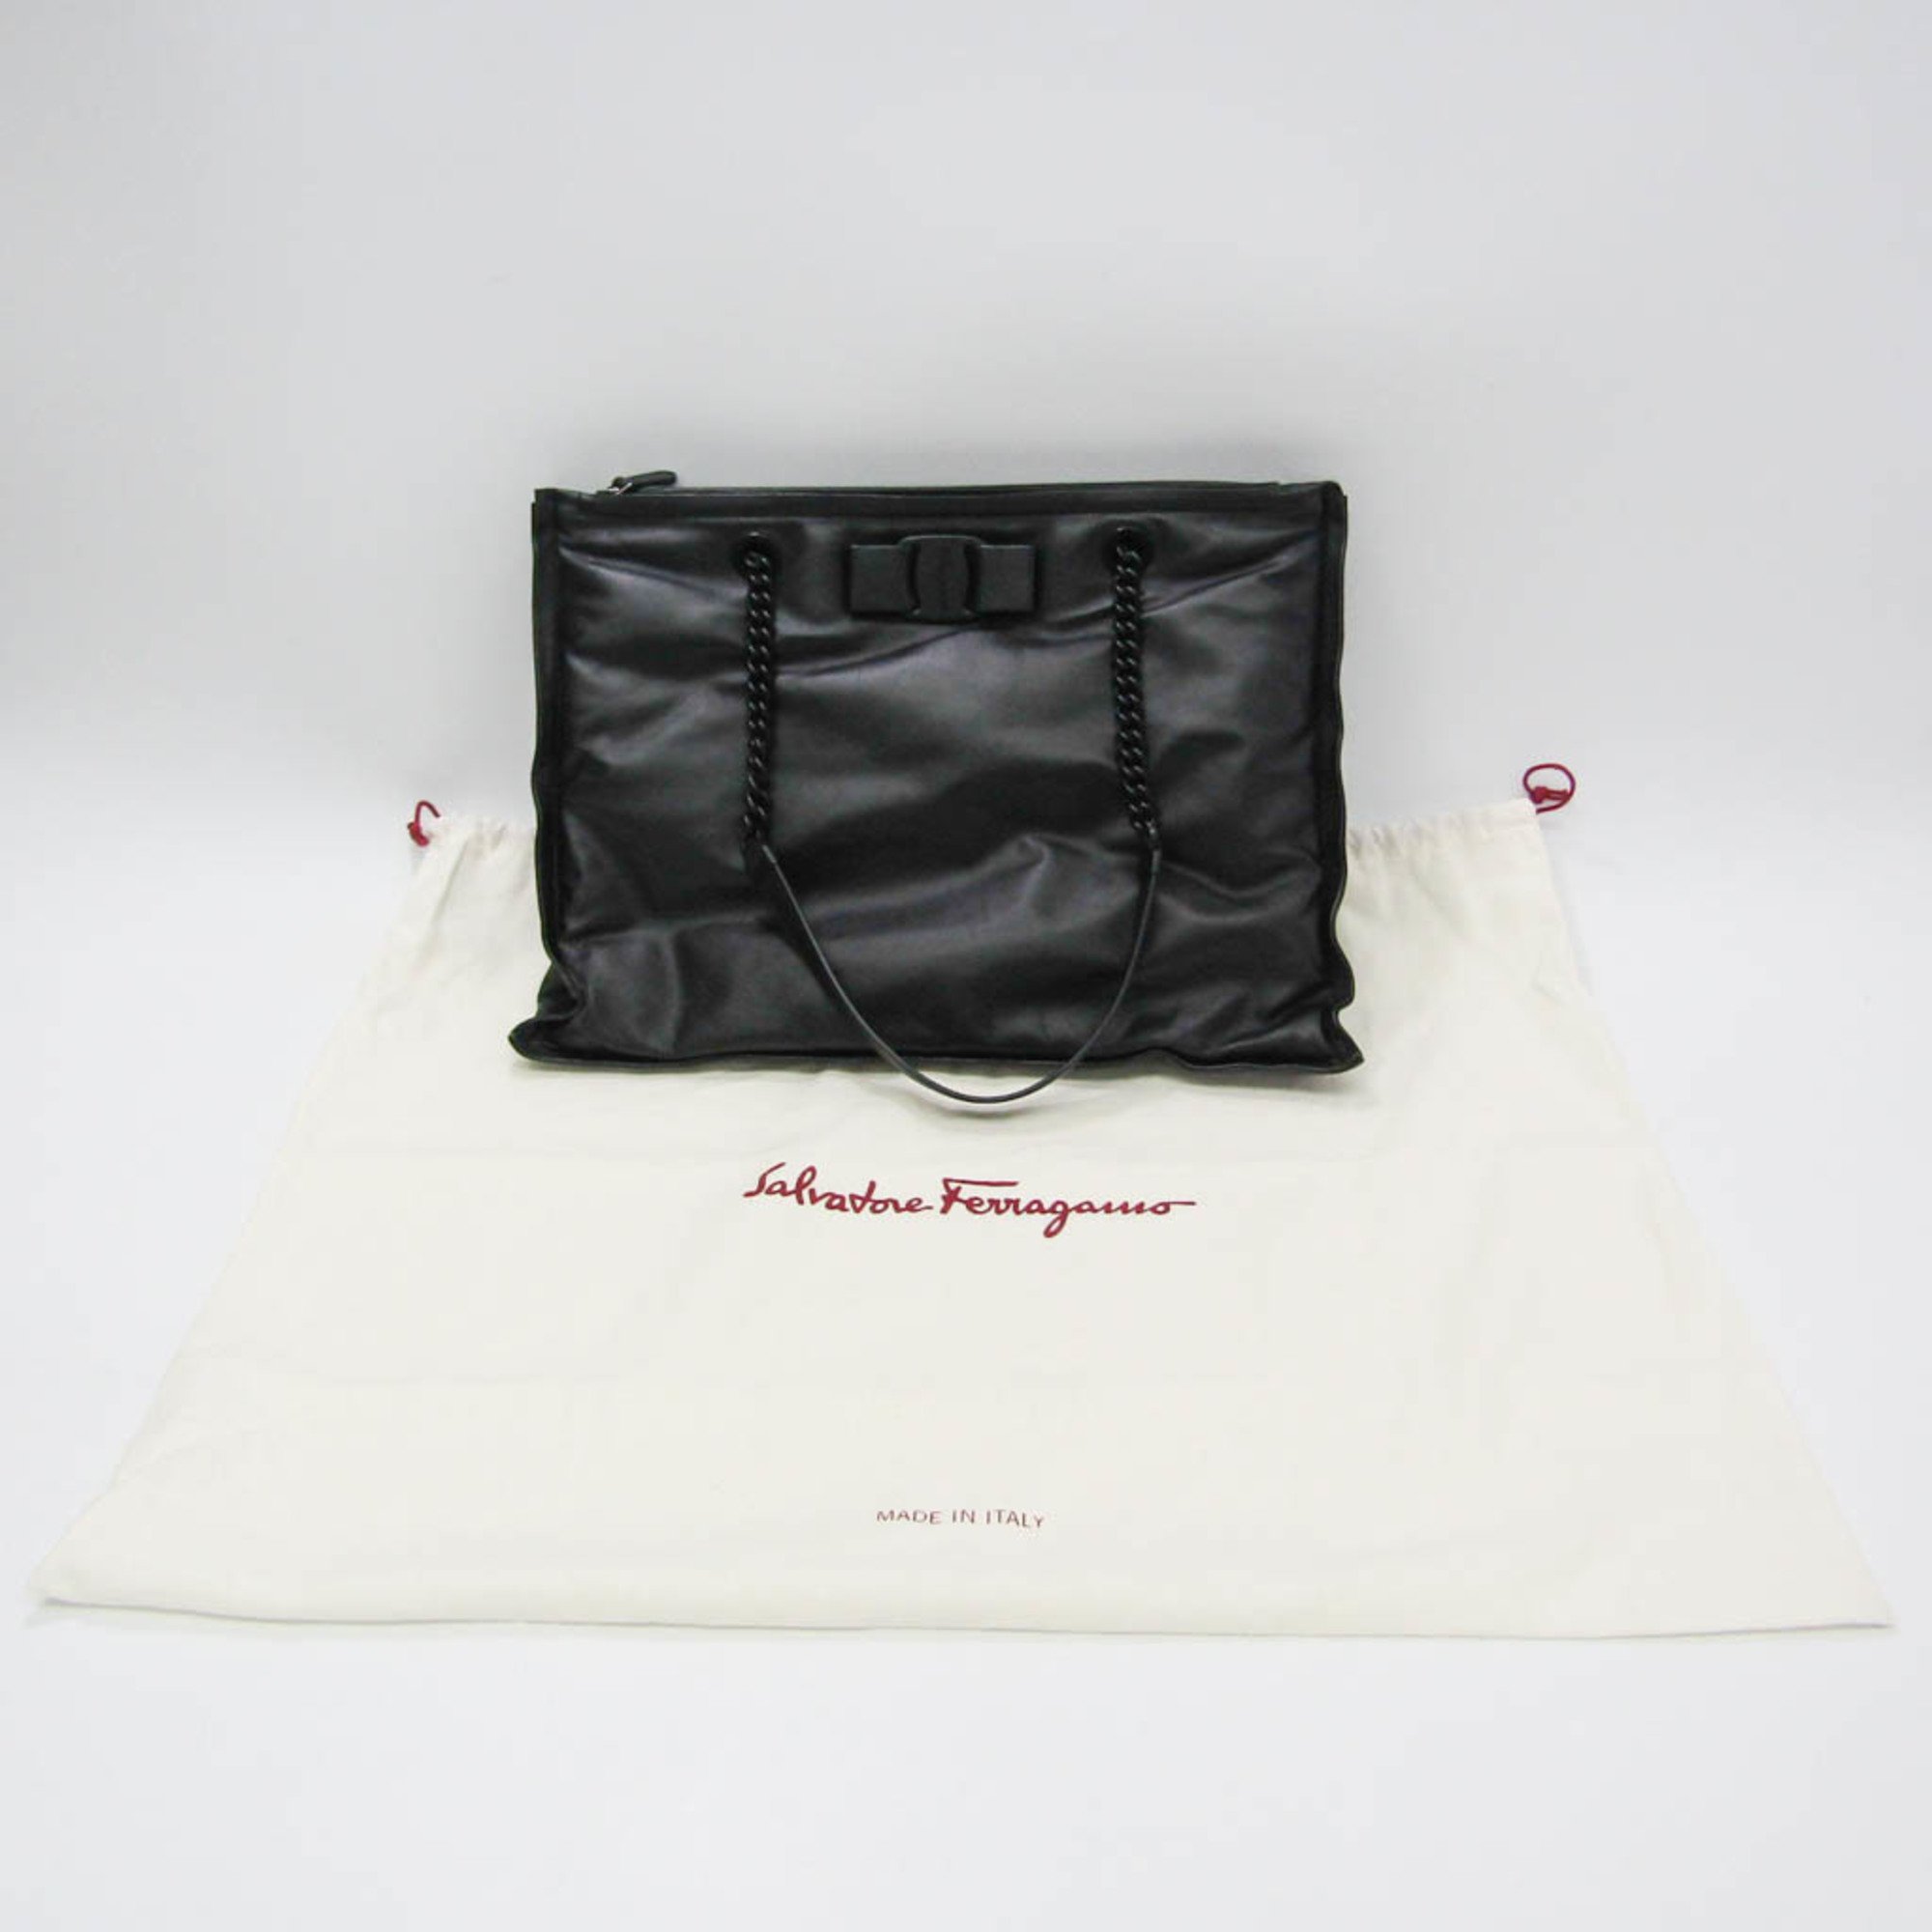 Salvatore Ferragamo VIVA BOW Chain Tote FZ-21 0903 Women's Leather Tote Bag Black